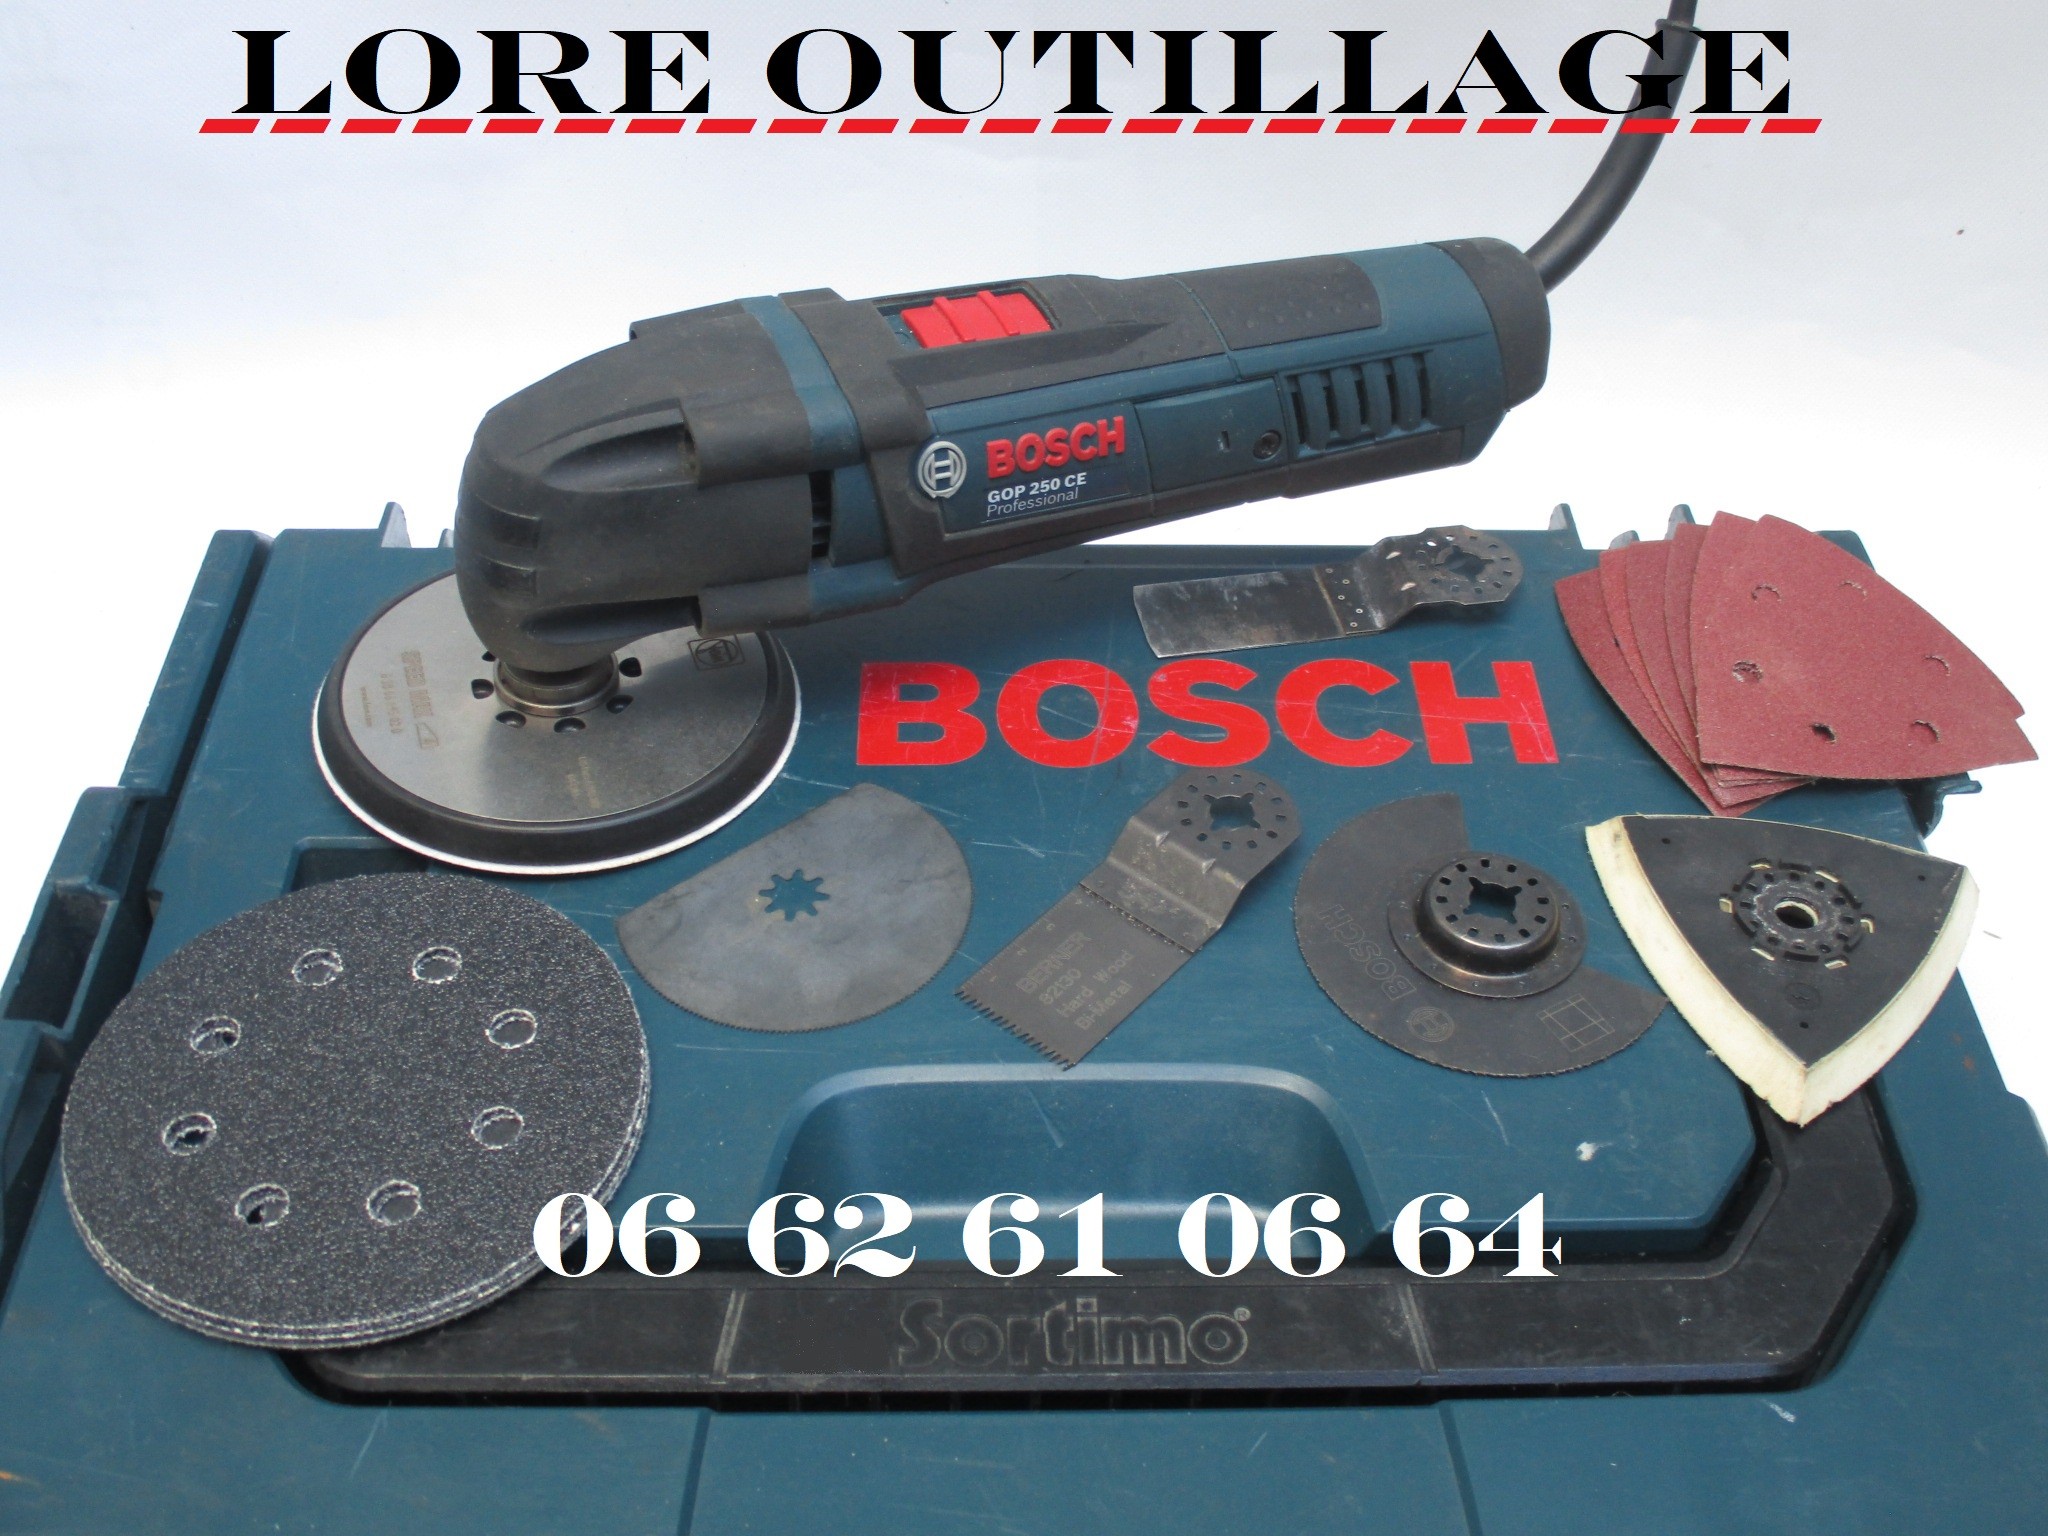 Outil Multifonction Bosch Gop: polyvalent et puissant!